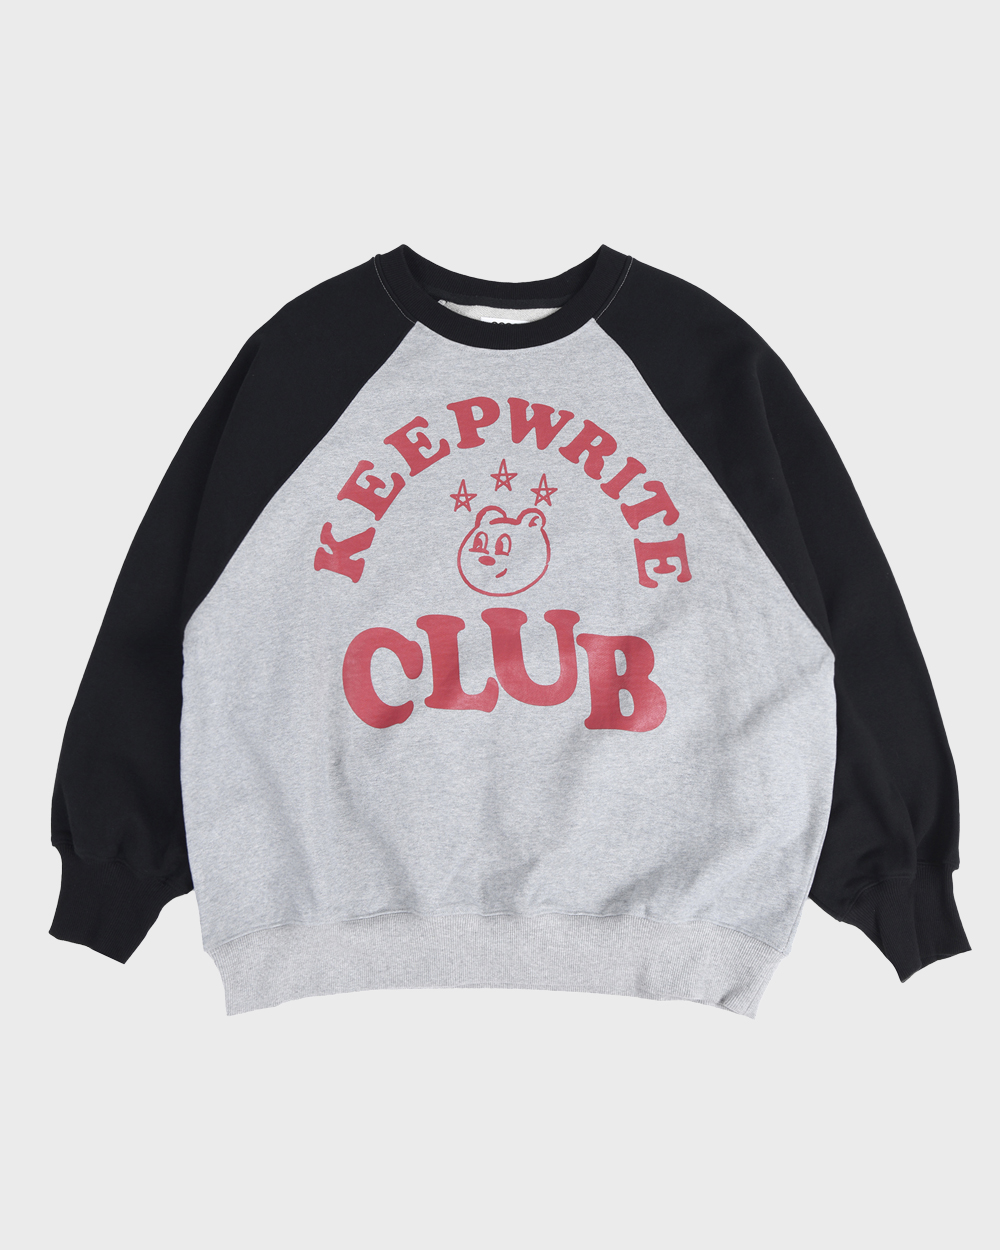 aeae Keep Writing Club Raglan Sweatshirts (Black)